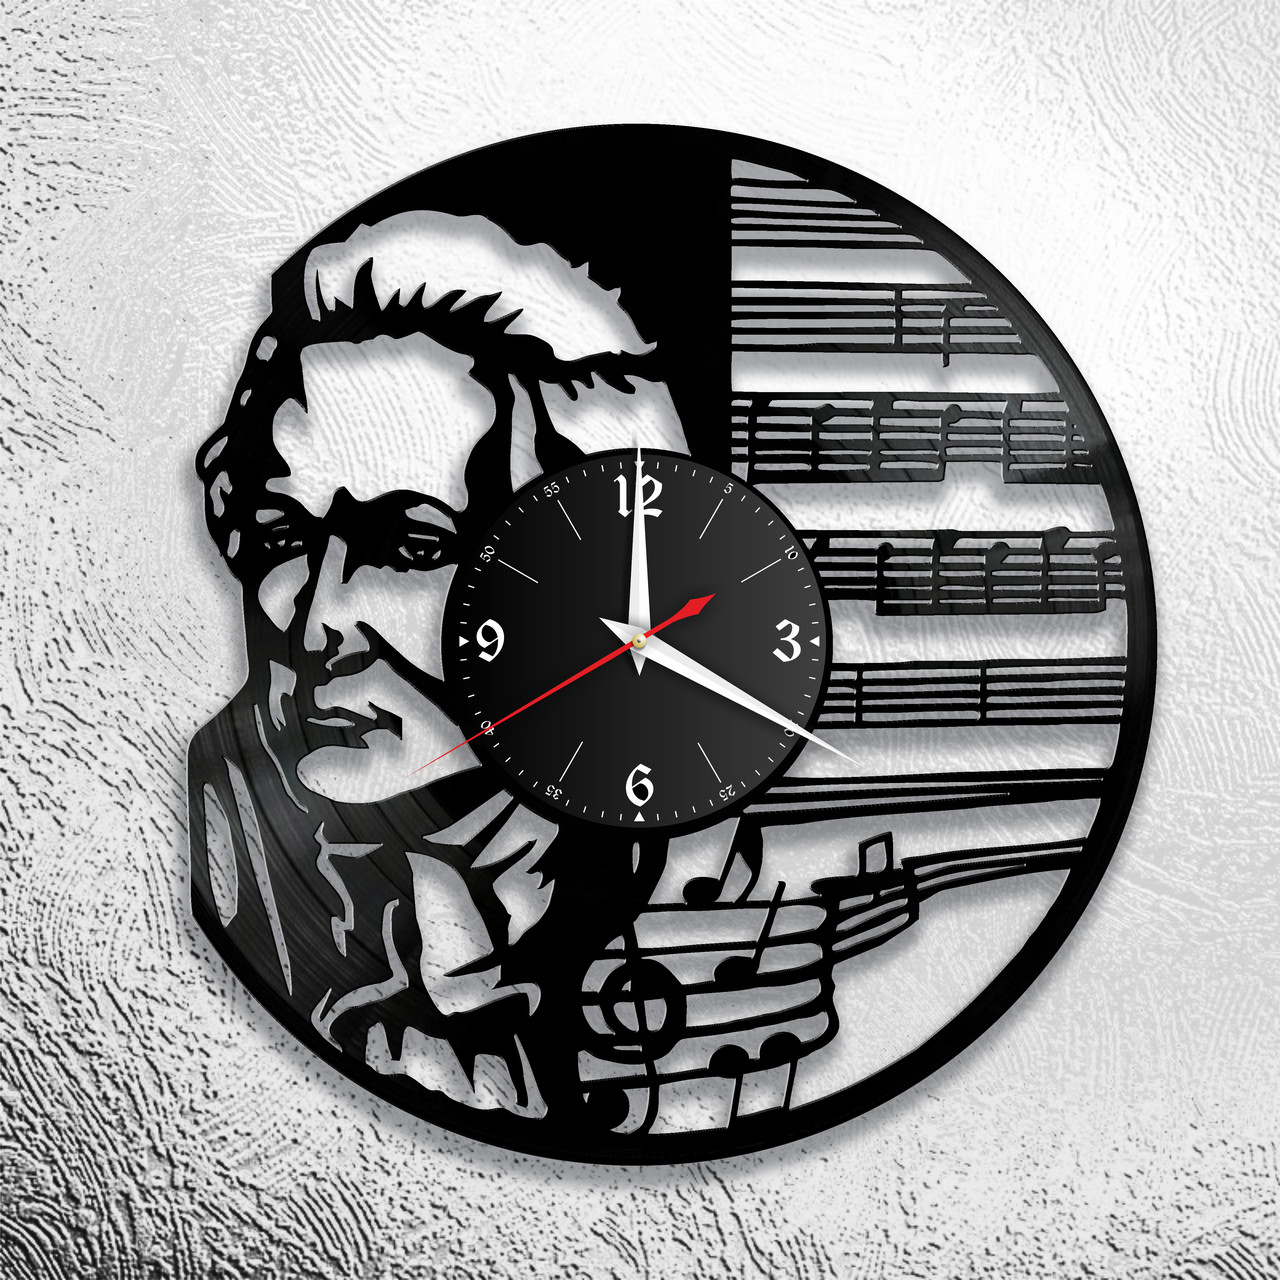 Оригинальные часы из виниловых пластинок "Моцарт" версия 1